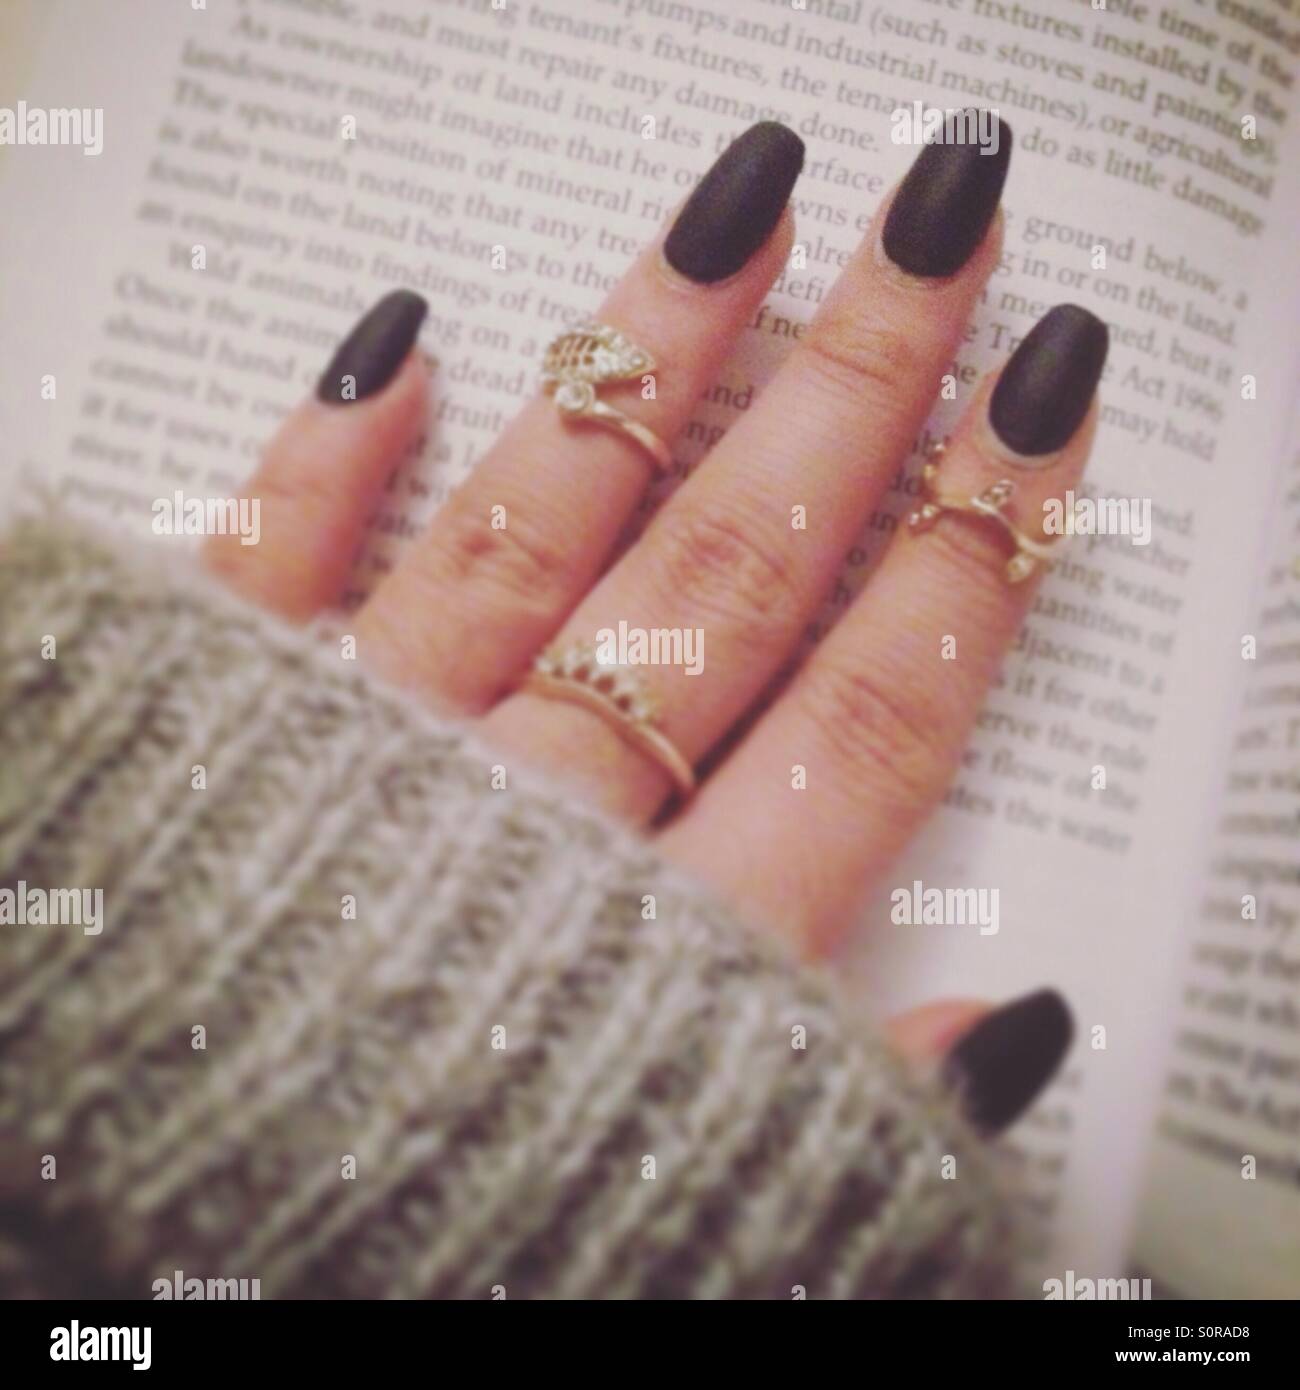 Matt schwarze Nägel mit MIDI-Ringen in w grauen Pullover, während ein Buch  zu lesen Stockfotografie - Alamy